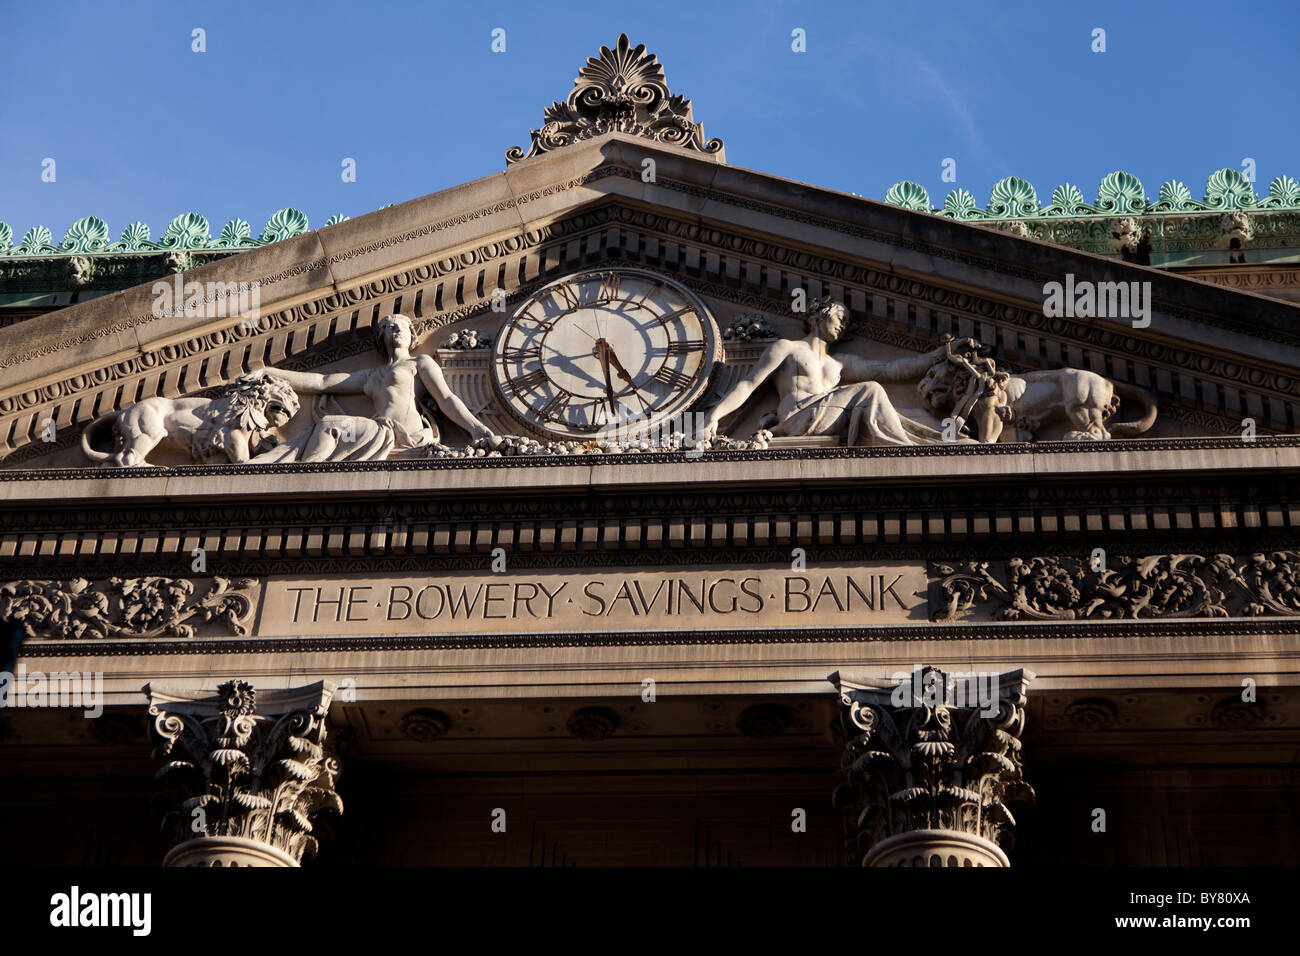 Fassade der Bowery Savings Bank Gebäude auf Grand St New York (Manhattan). Es dient heute als Veranstaltungsort Funktion namens Capitale. Stockfoto